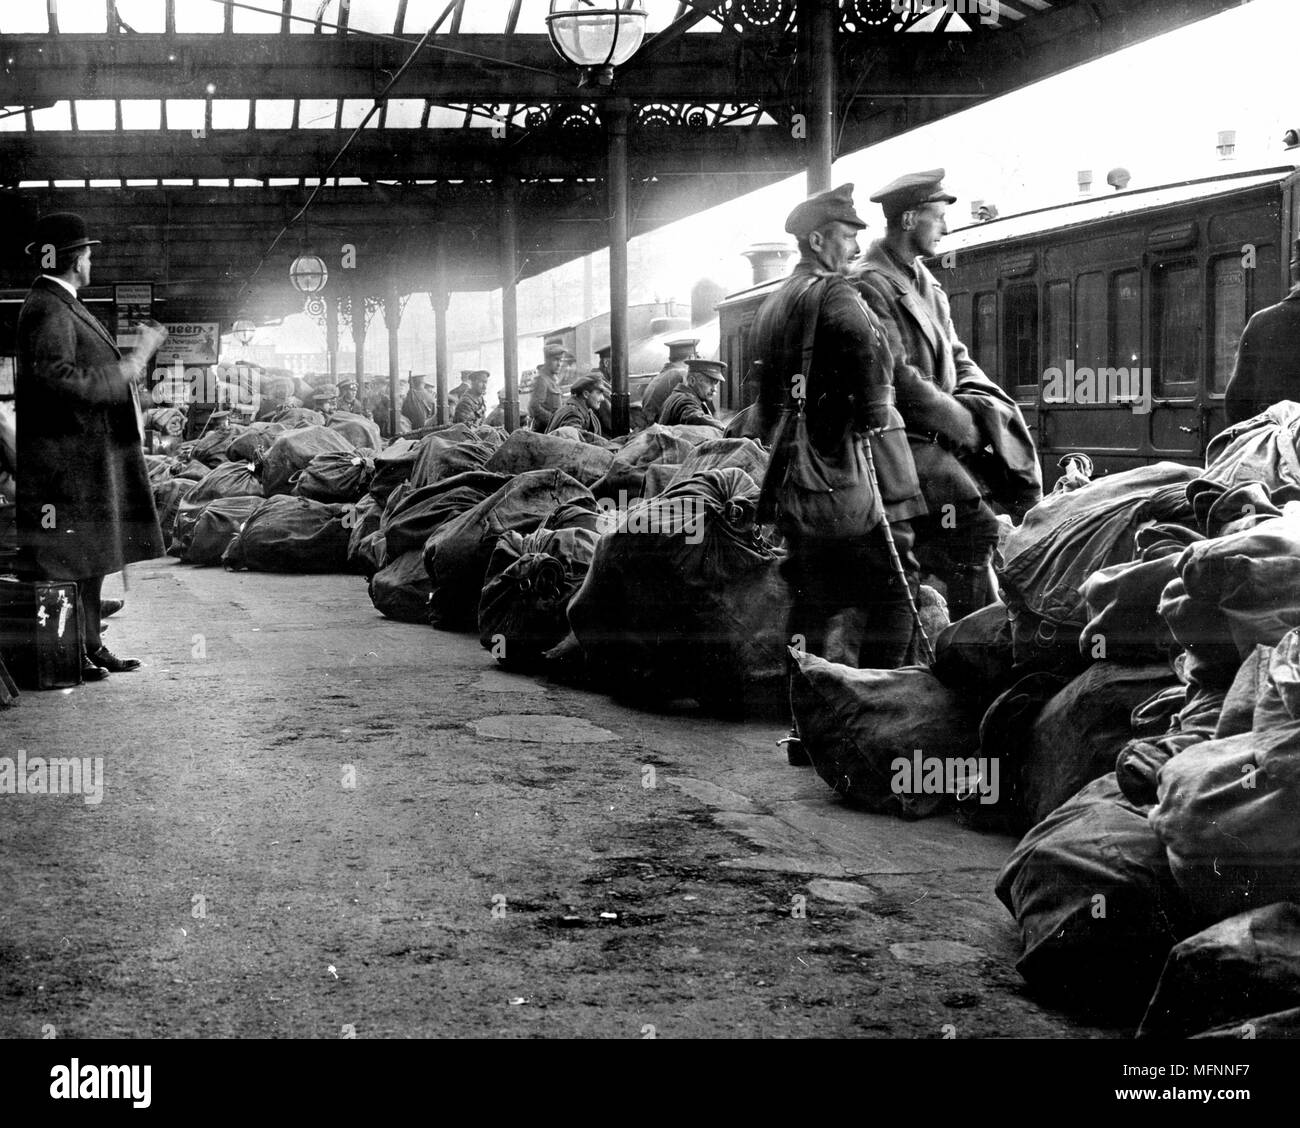 Dopo l'anti-inglese insurrezione irlandese di Dublino, maggio 1916, i servizi pubblici sono state distrutte. Qui i sacchi della posta sono impilati sulla piattaforma alla stazione di Dublino sotto la protezione delle truppe britanniche in attesa di distribuzione. Fotografia. Foto Stock